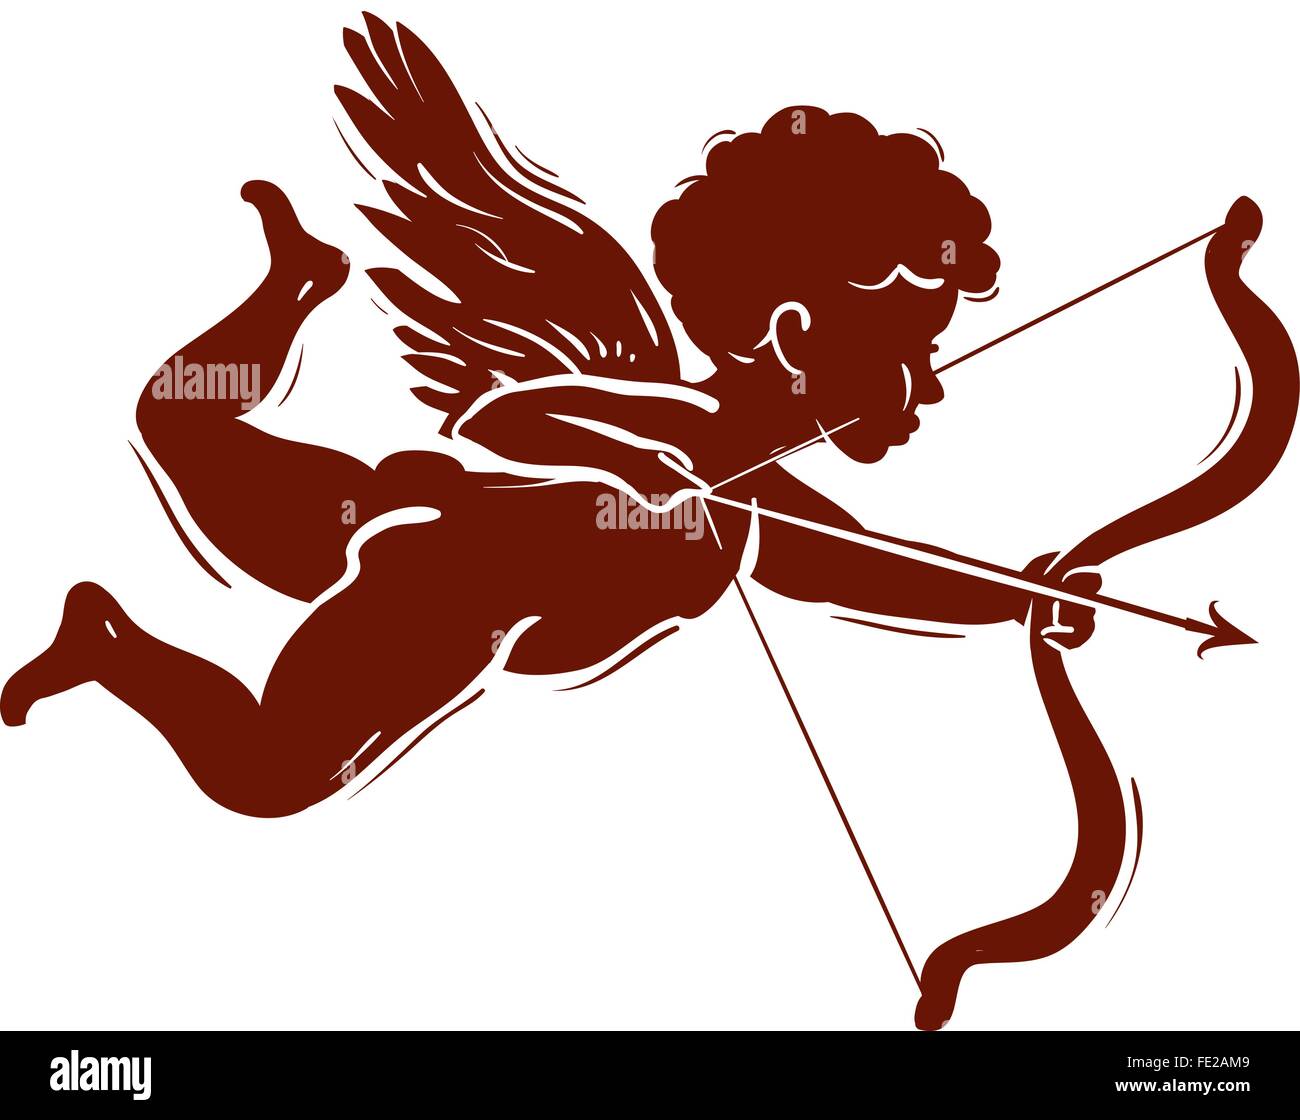 Color De La Imagen De La Silueta Arco Cupido Con La Flecha Con El Corazón  Rojo Ilustración Vectorial Ilustraciones svg, vectoriales, clip art  vectorizado libre de derechos. Image 78352180